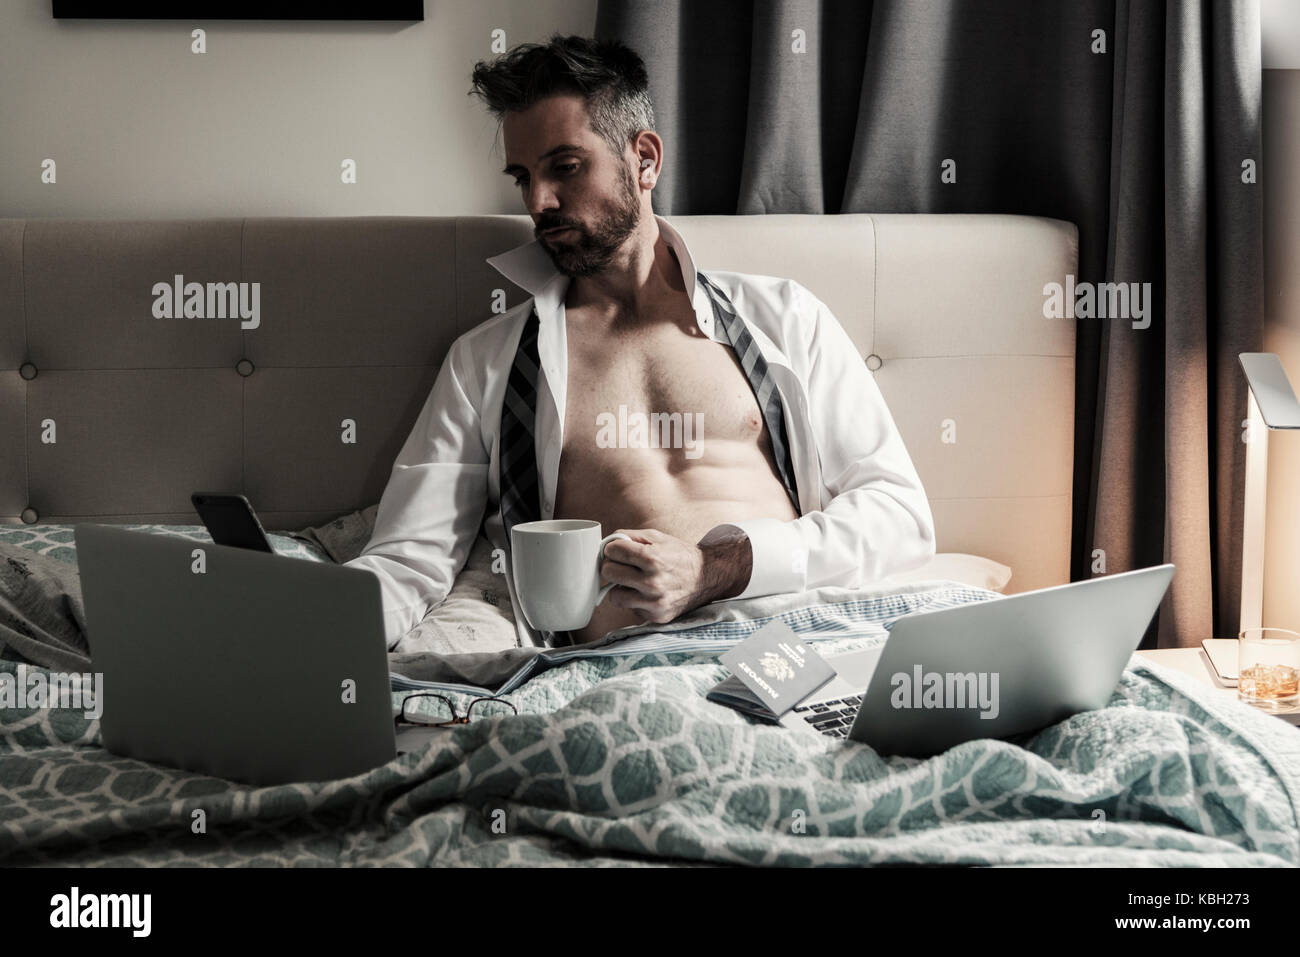 Gutaussehende kaukasische Männer, die im Bett mit mehreren Computern und mobilen Wireless-Geräten arbeiten, während sie eine Tasse Kaffee halten. Stockfoto